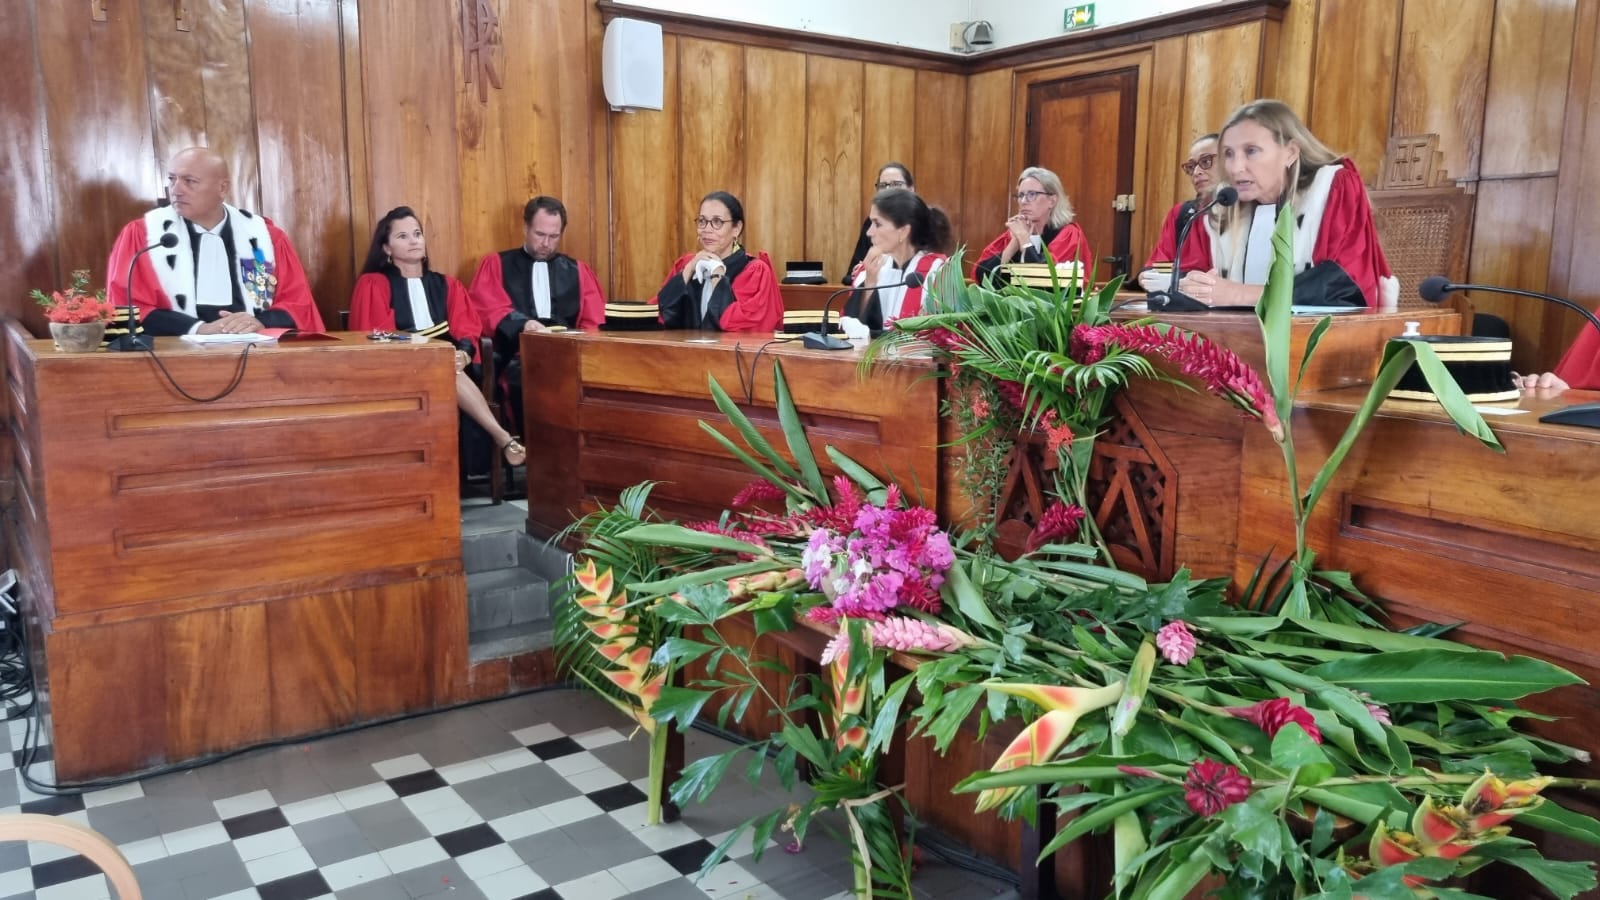     La Cour d'Appel de Basse-Terre a fait sa rentrée solennelle

